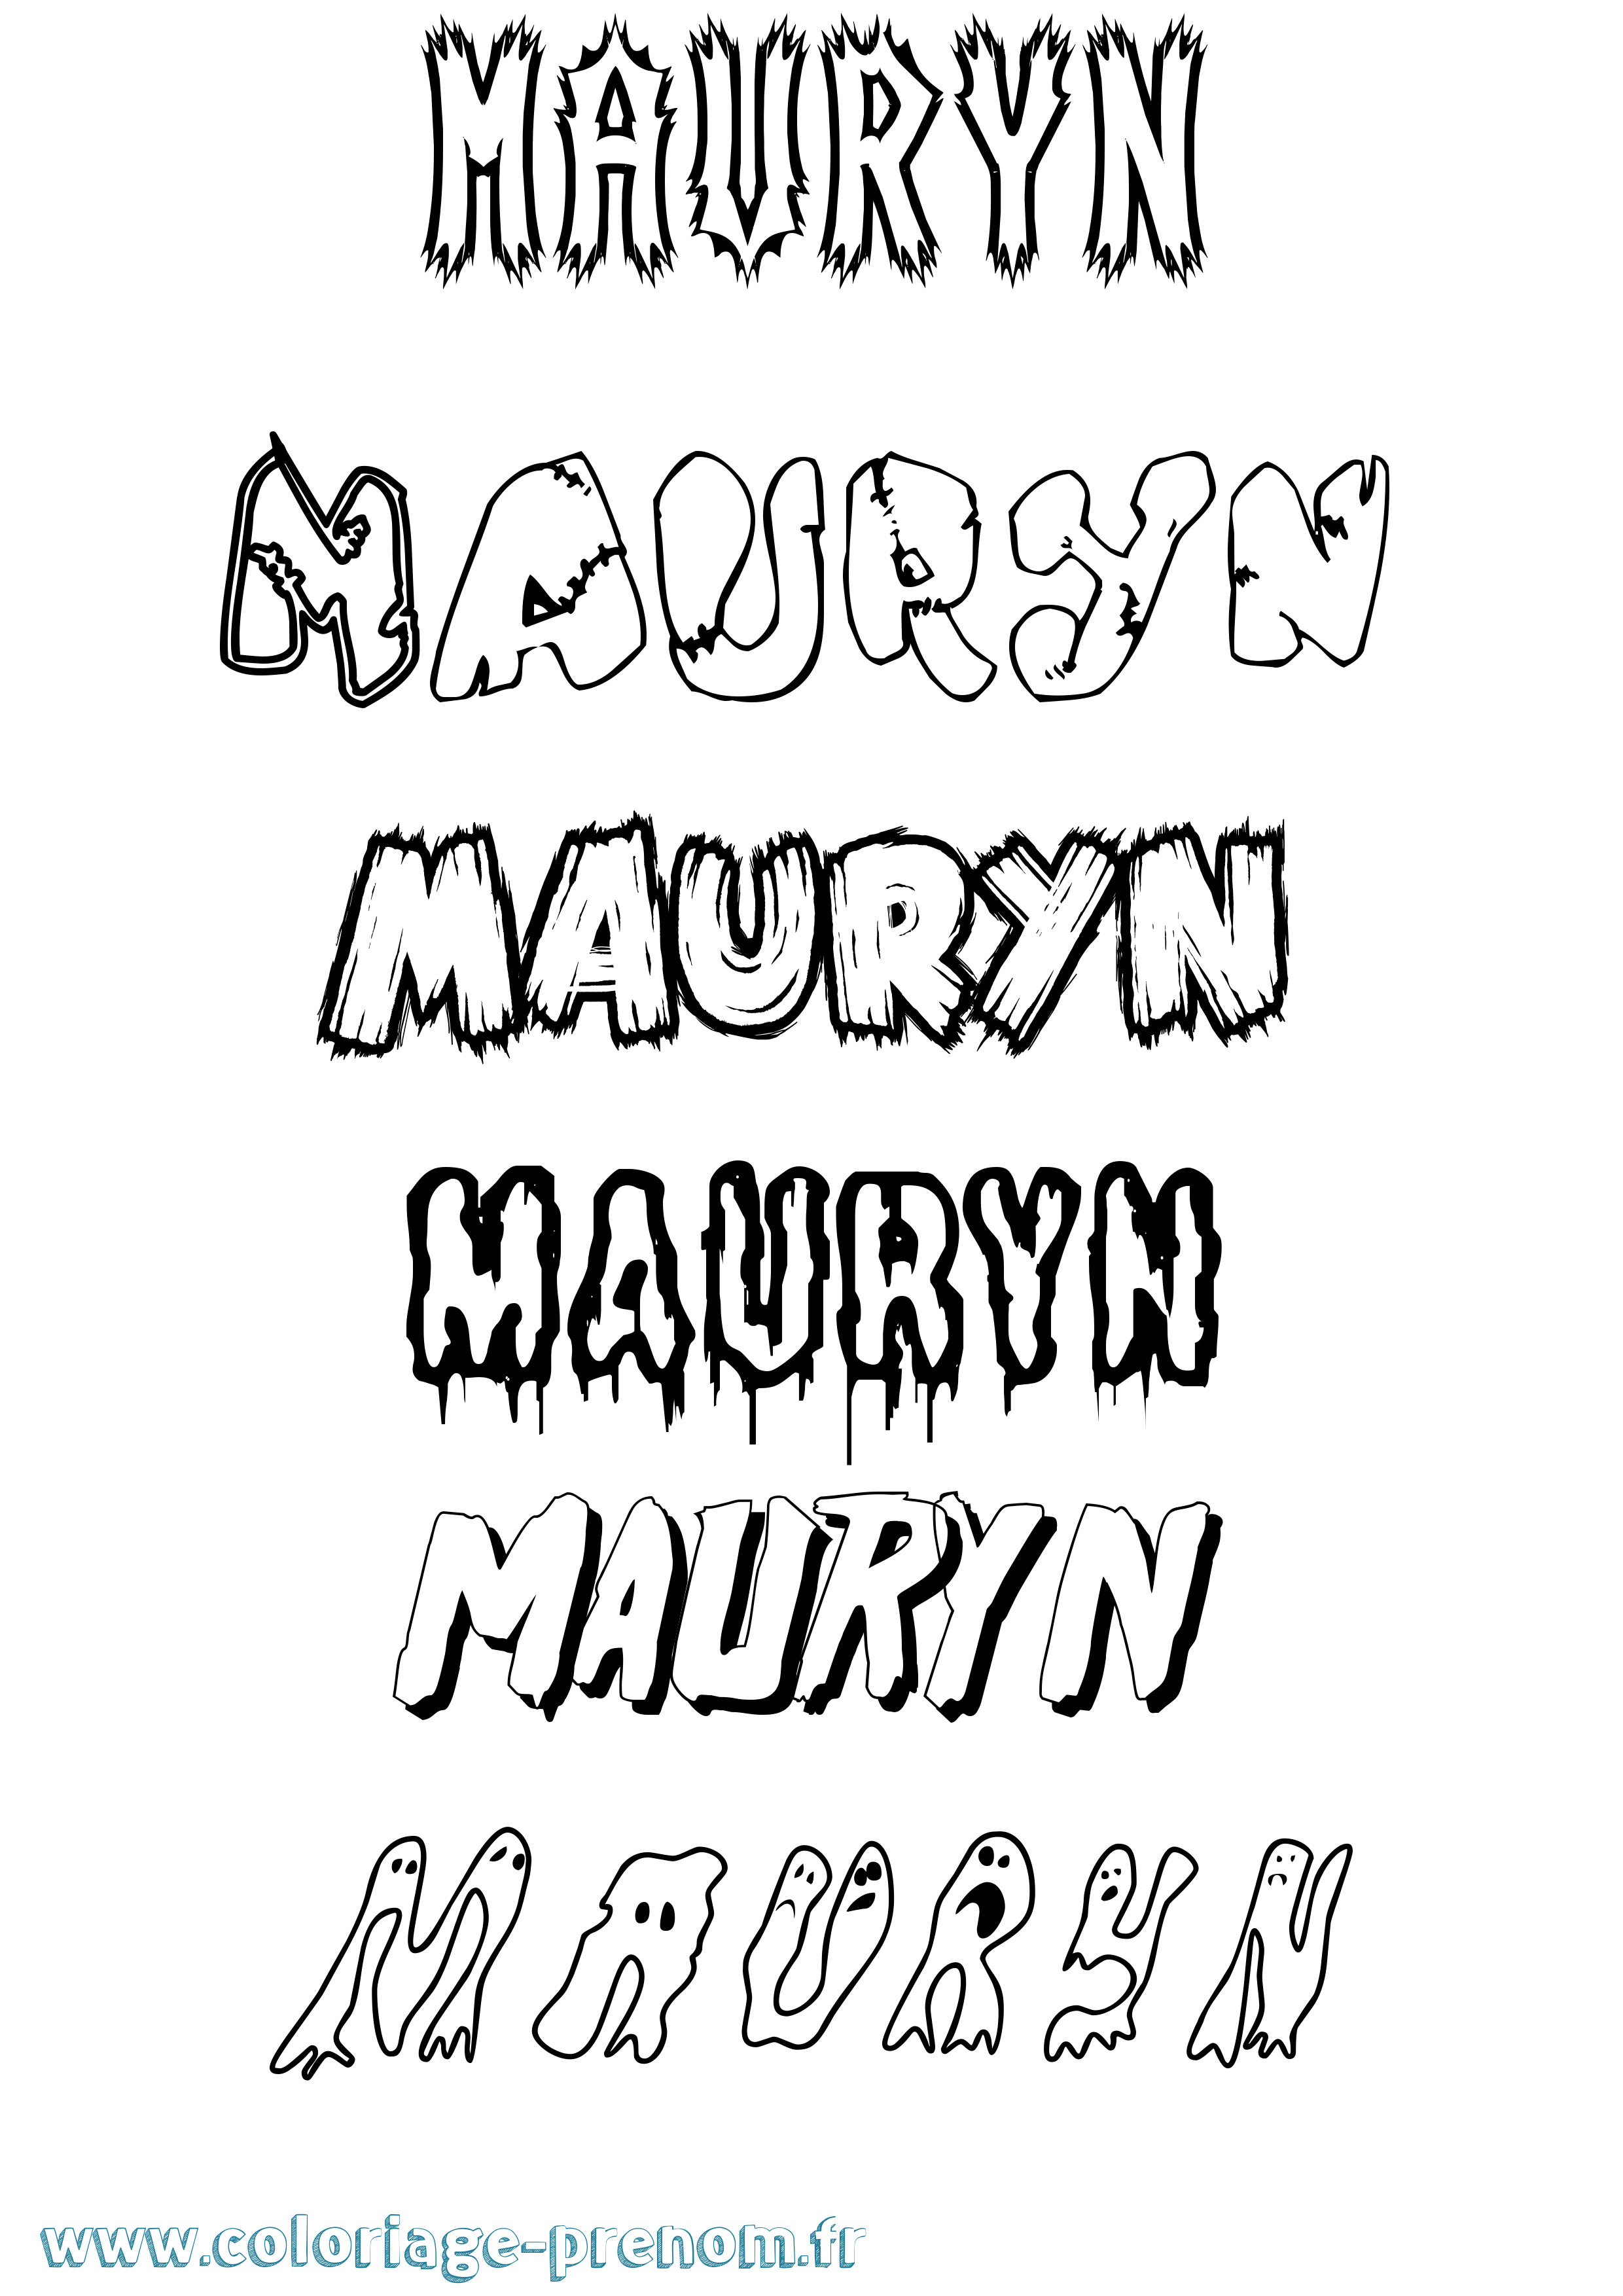 Coloriage prénom Mauryn Frisson